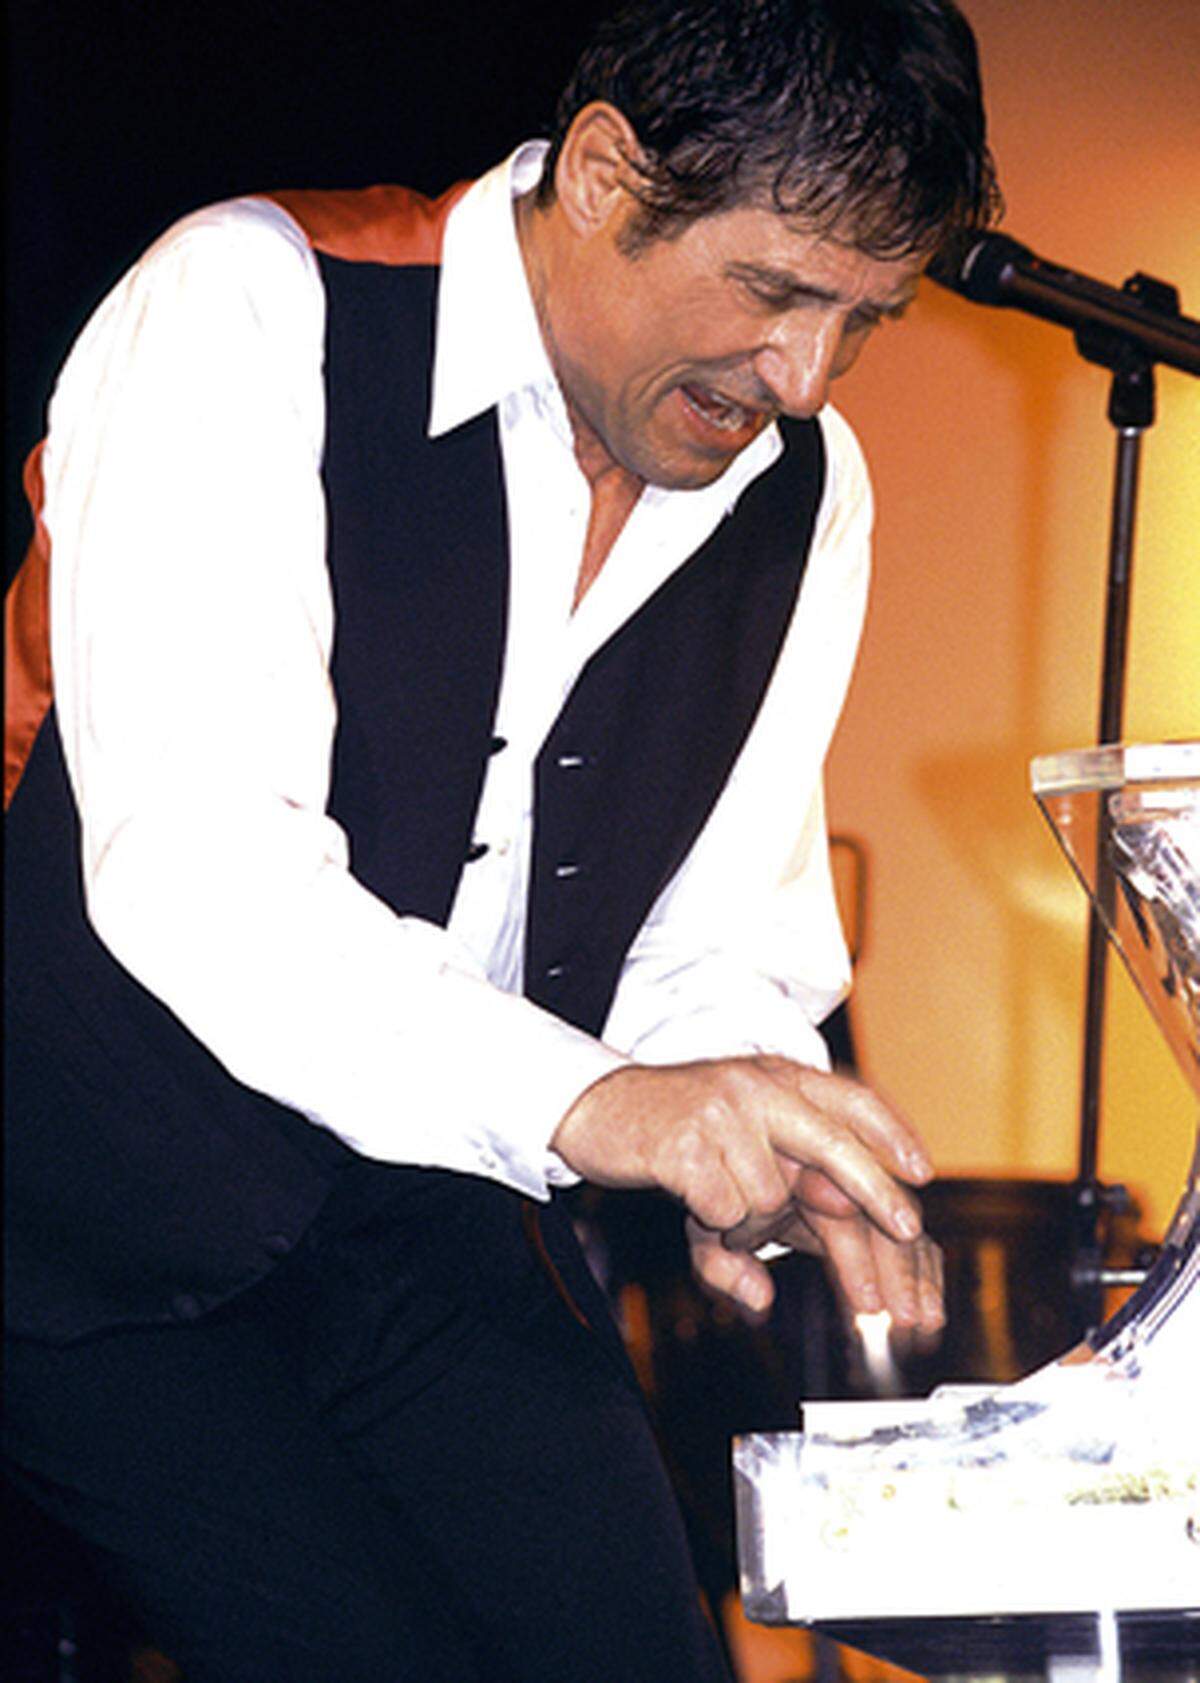 Am 2. Dezember 2007 hatte das Musical "Ich war noch niemals in New York" im Operettenhaus Hamburg Weltpremiere. Alle Lieder darin stammen von Udo Jürgens. Selbst tritt er aber nicht auf.